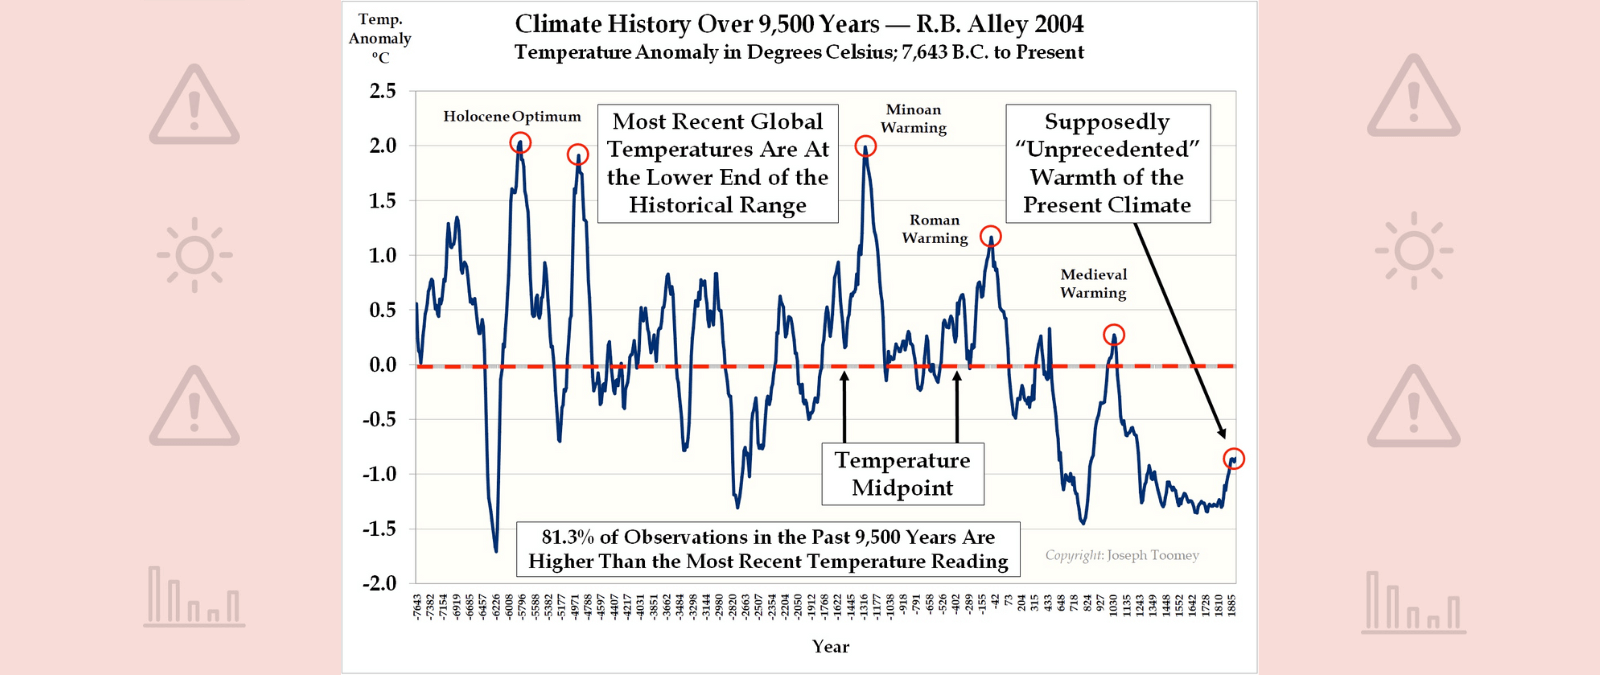 Cuidado con esta gráfica de temperaturas que busca negar el calentamiento global: acaba en 1885 y sólo representa un punto de Groenlandia